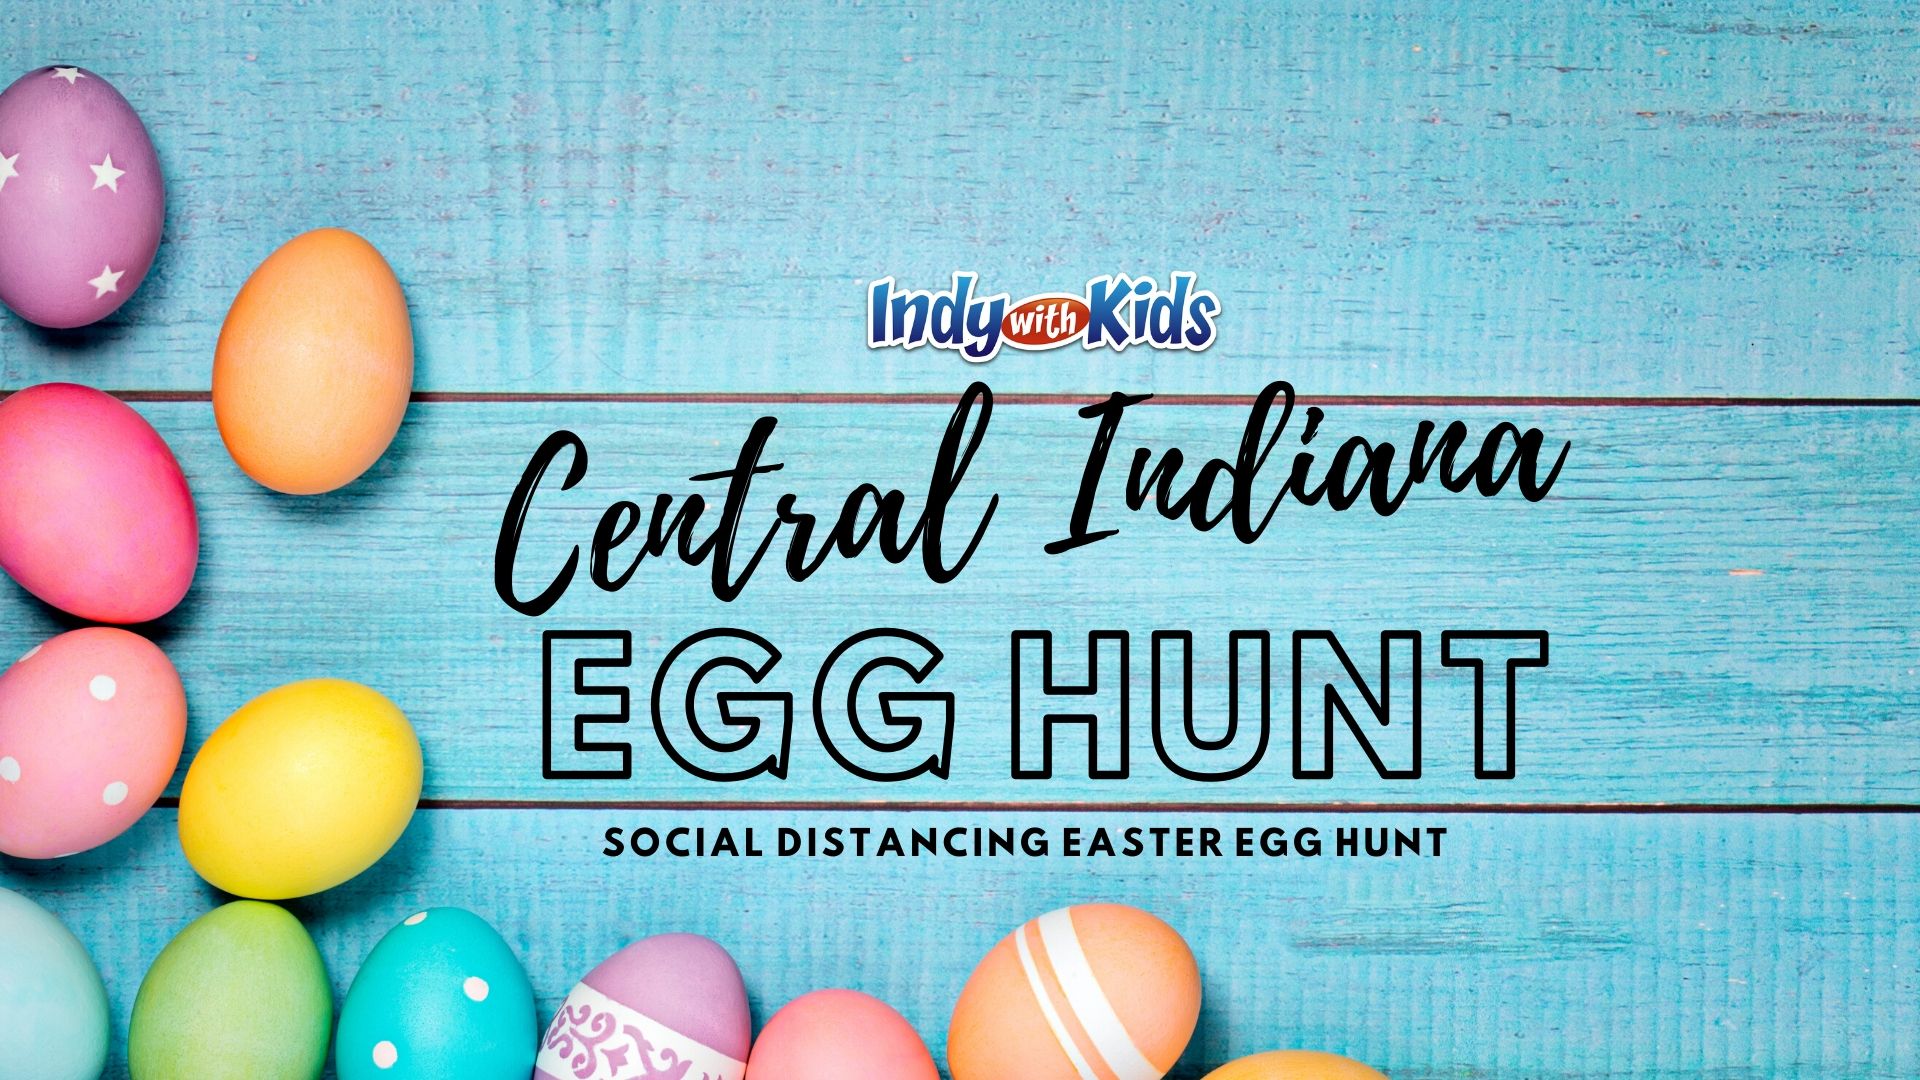 Central Indiana Easter Egg Hunt Social Distancing.